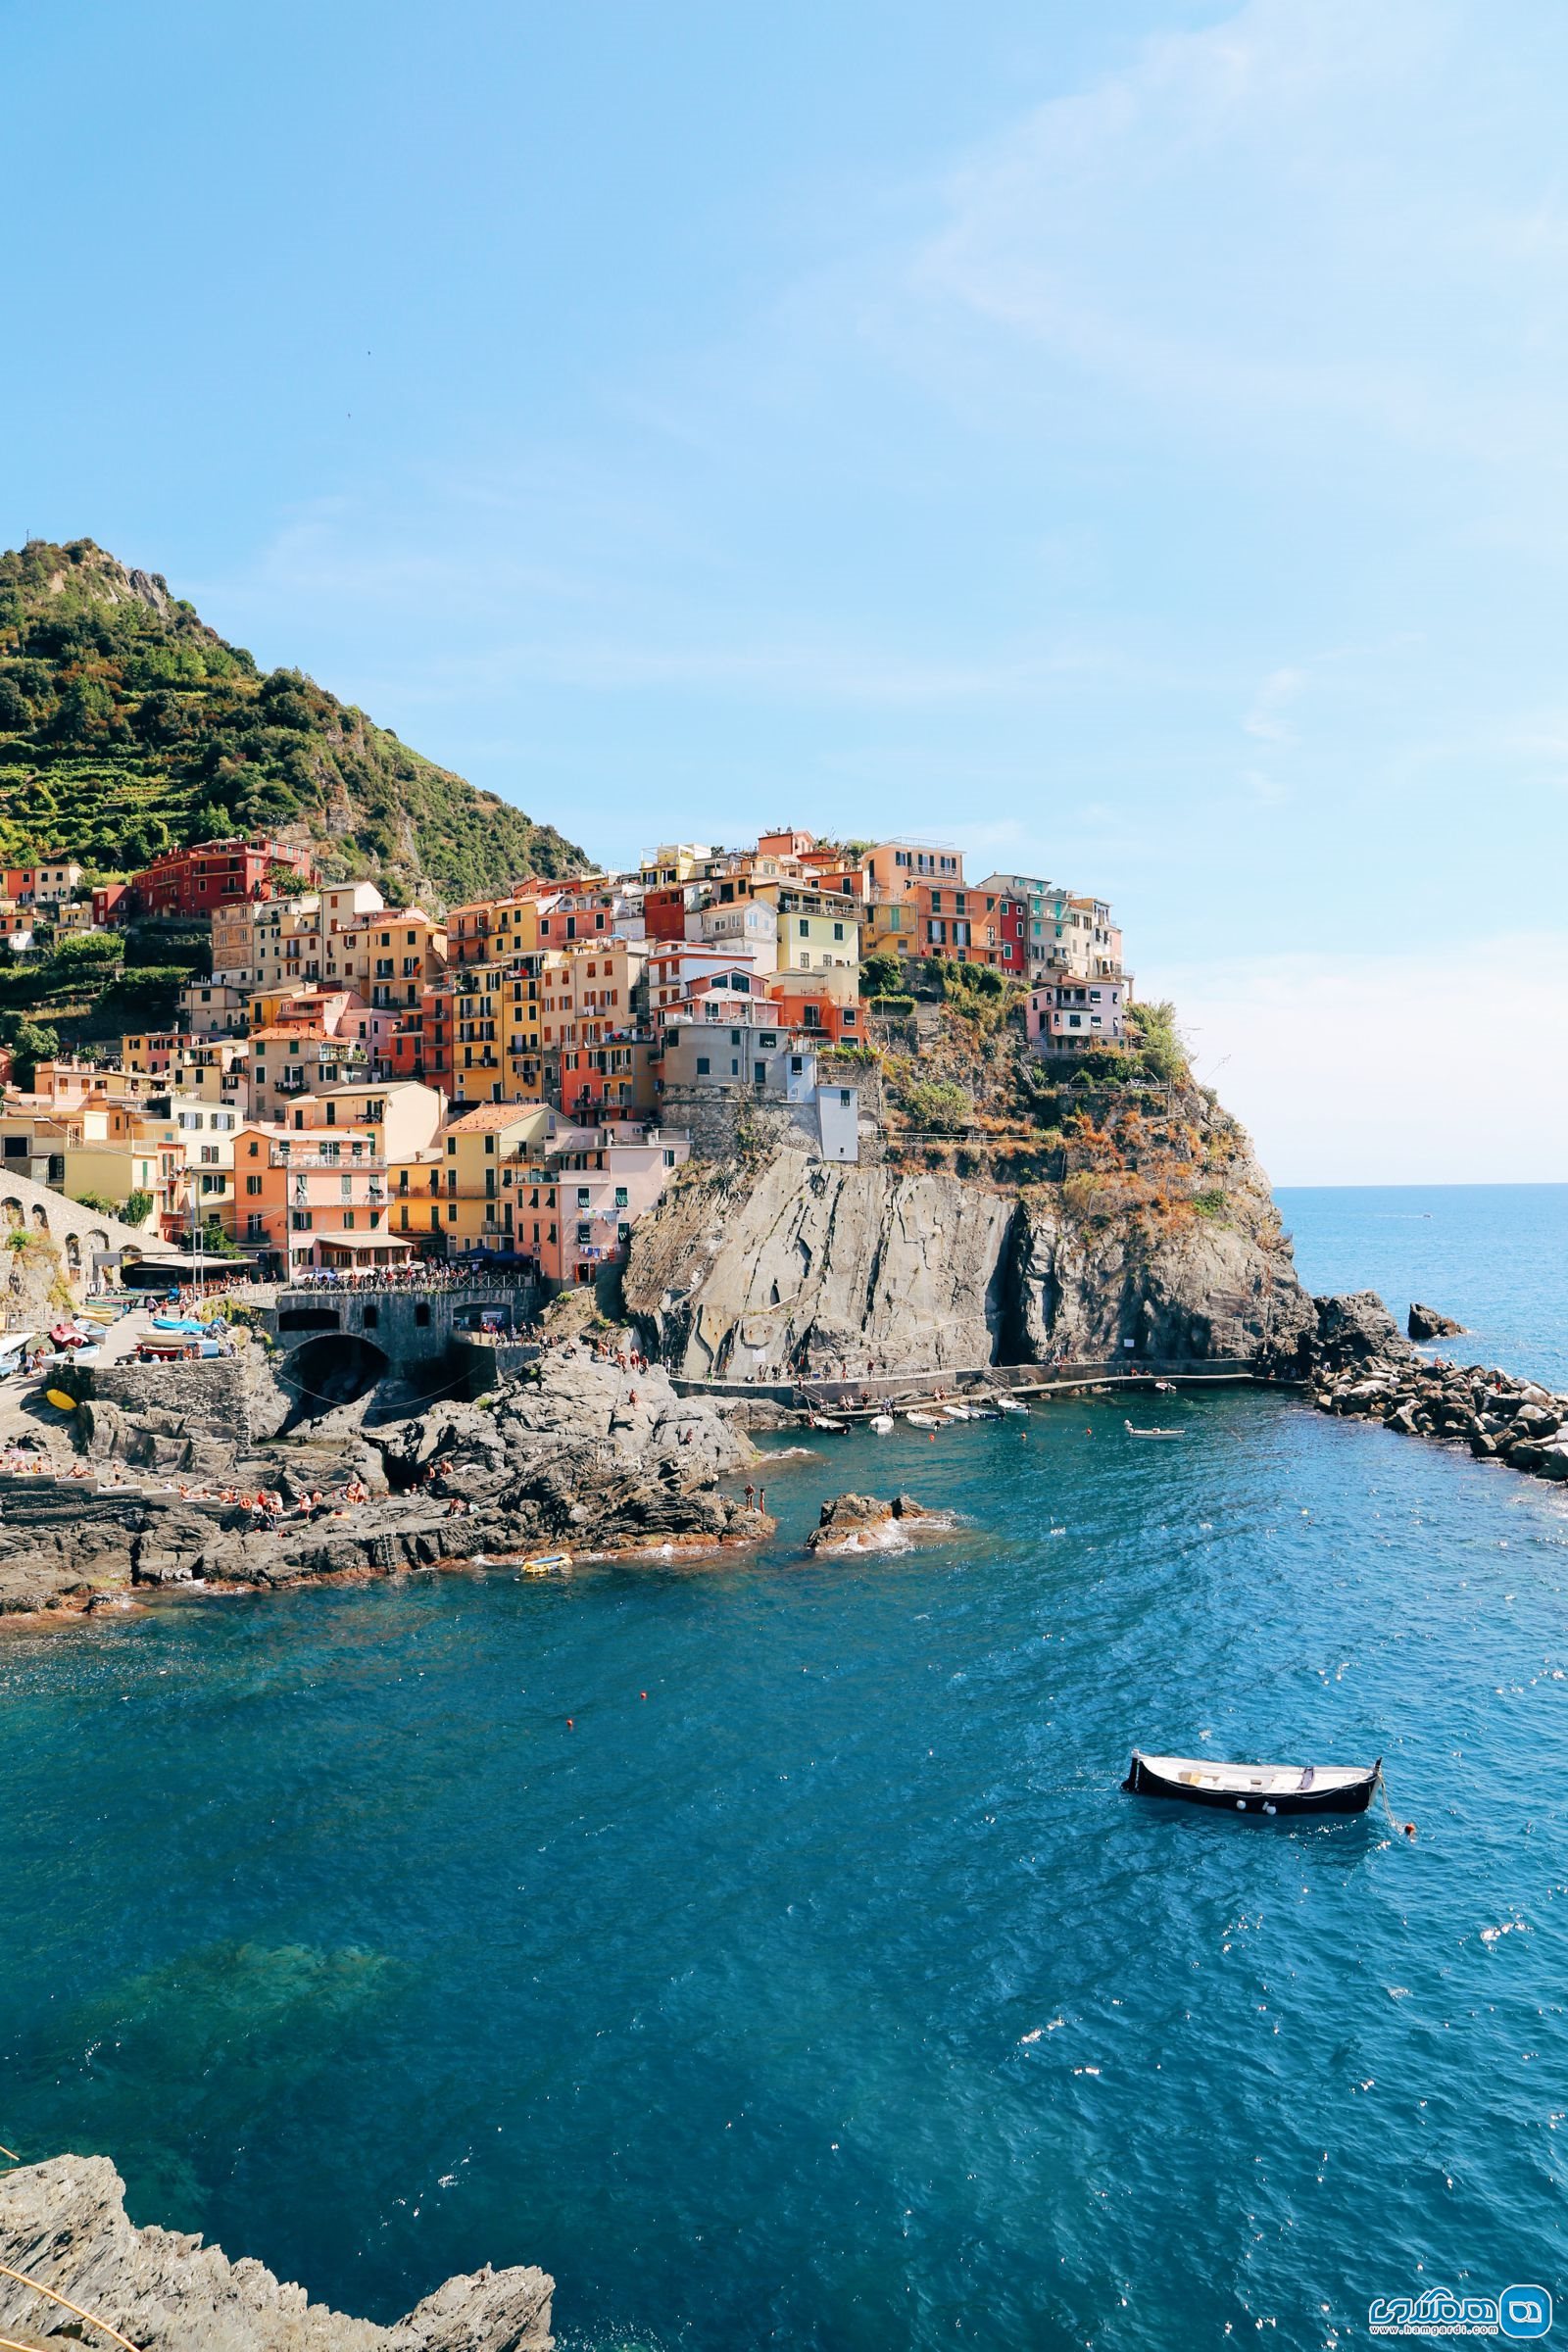 دانستنیهای سفر به ایتالیا | به آسانی گم خواهید شد